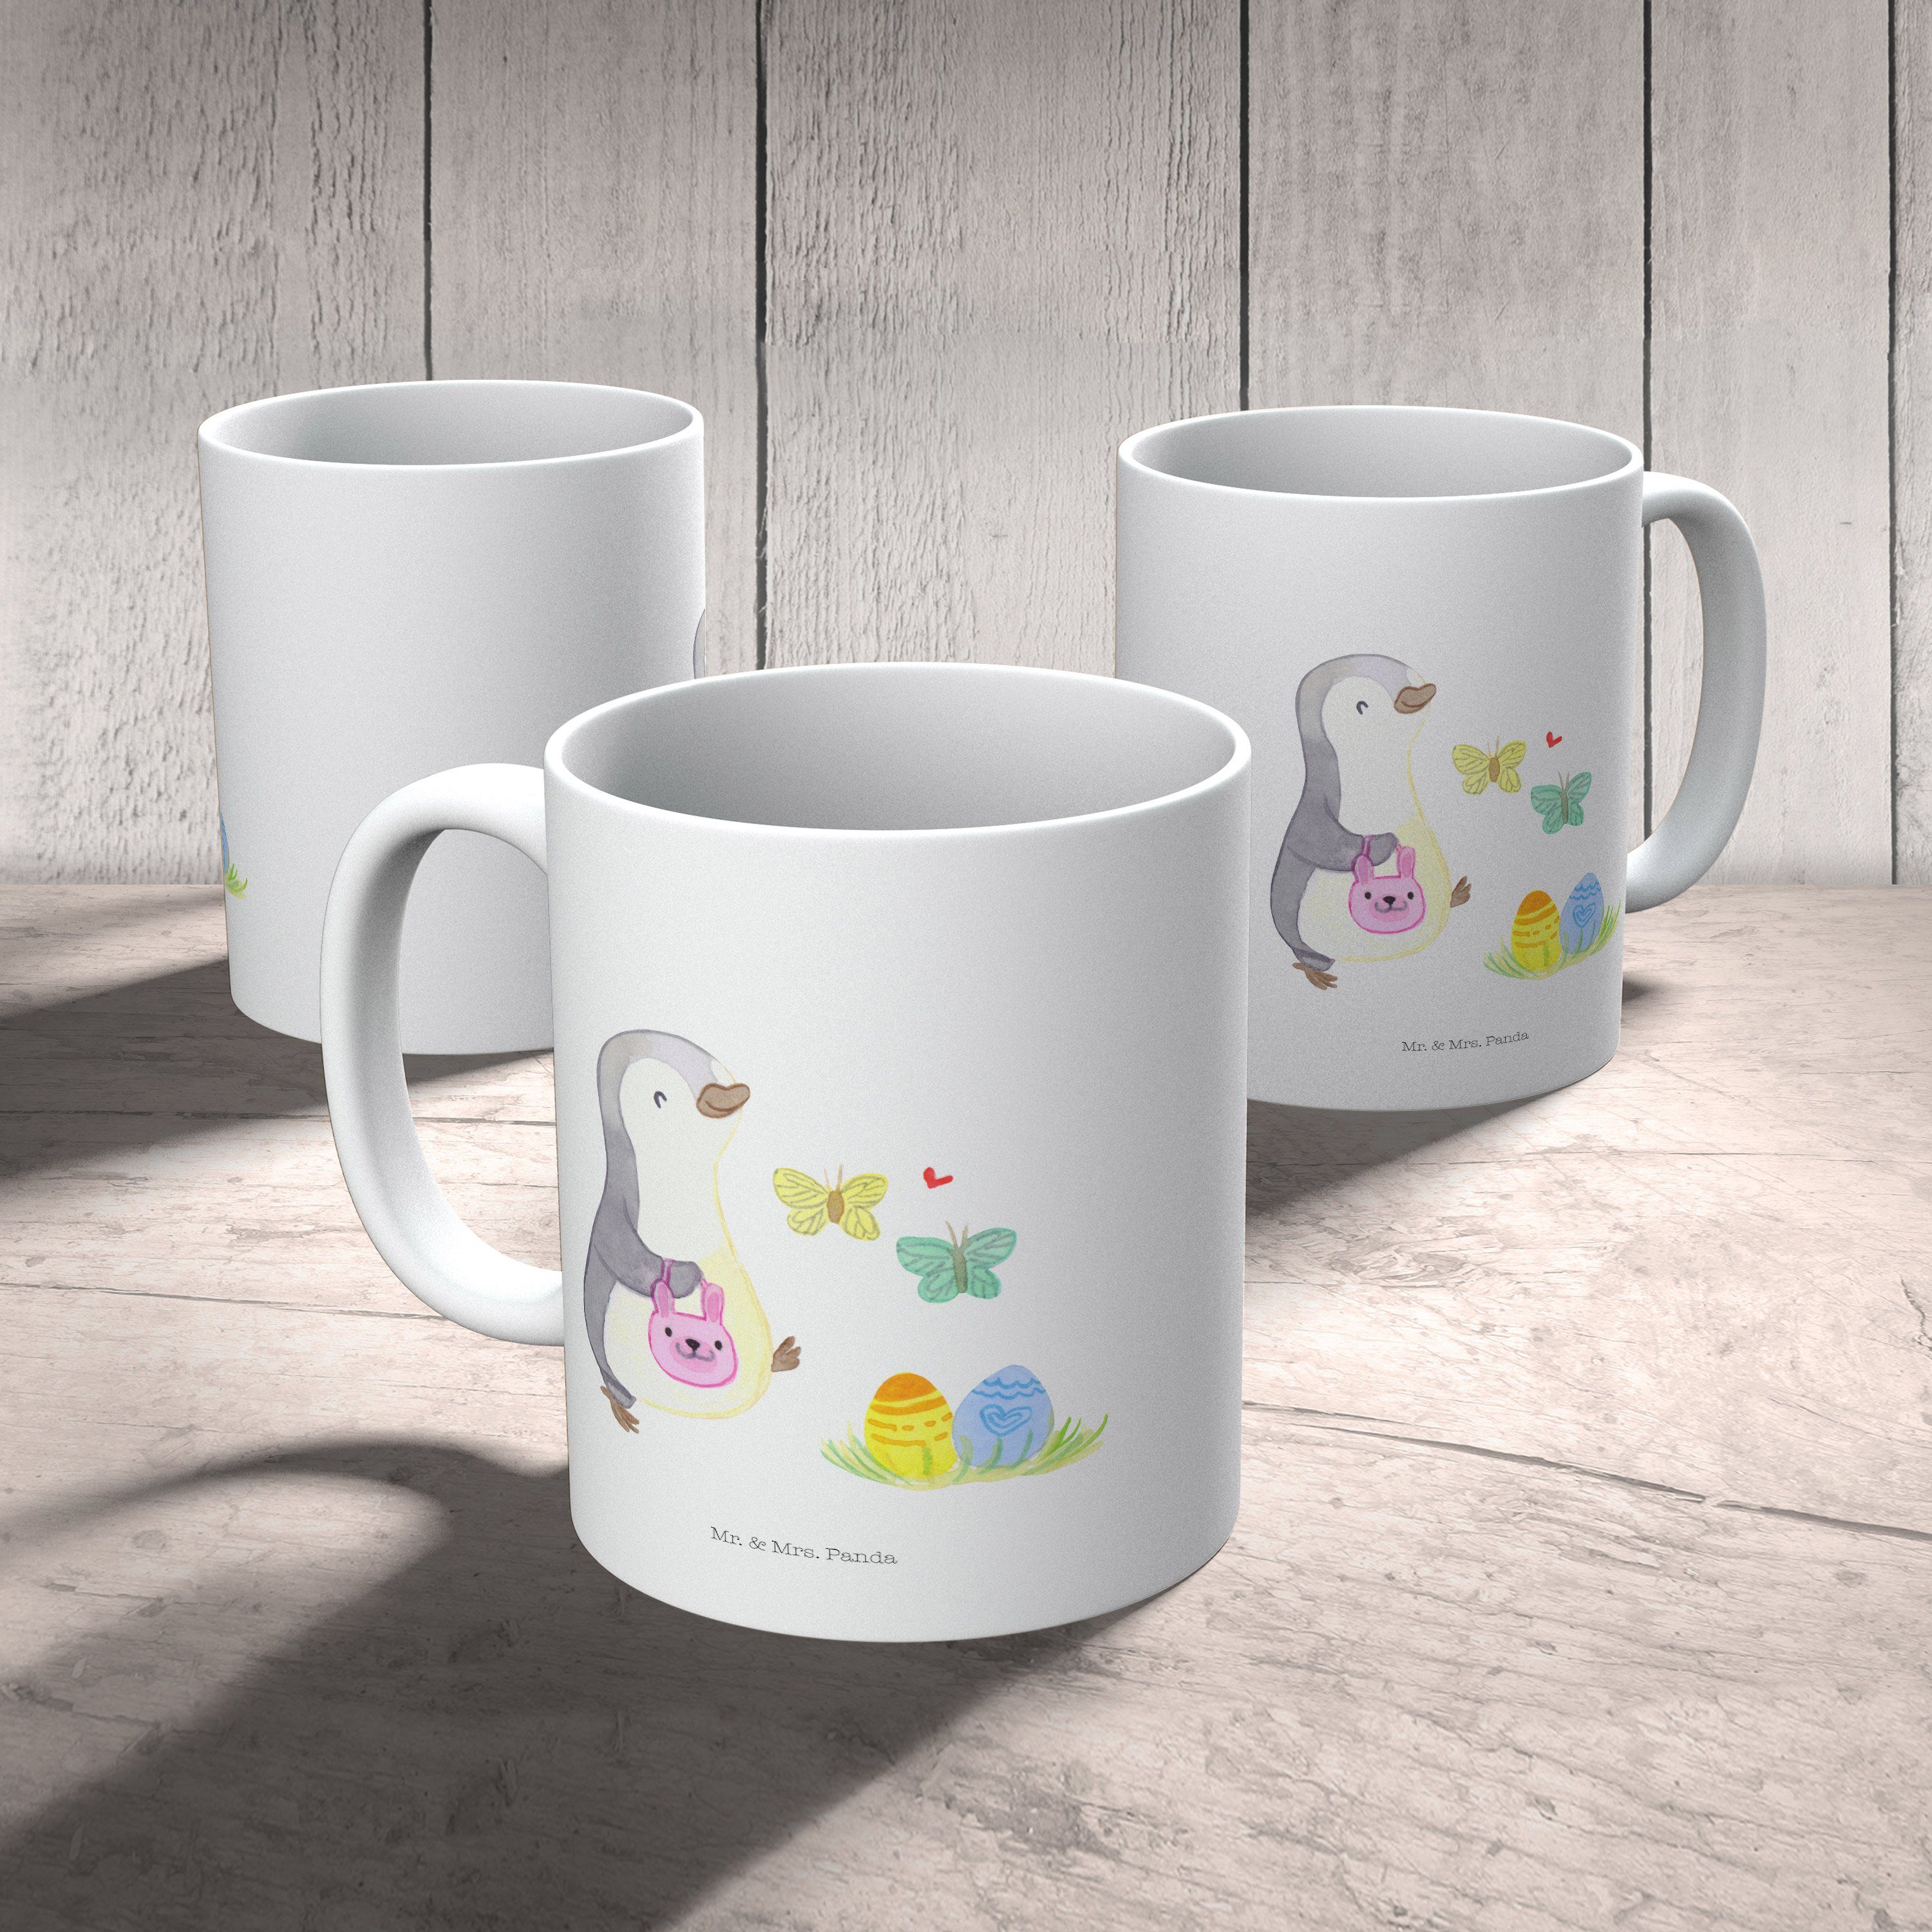 Mr. & Mrs. Pinguin Keramik Tasse, Weiß Geschenk, Tasse Panda - Geschenk - Geschenk, Ostern, Eiersuche